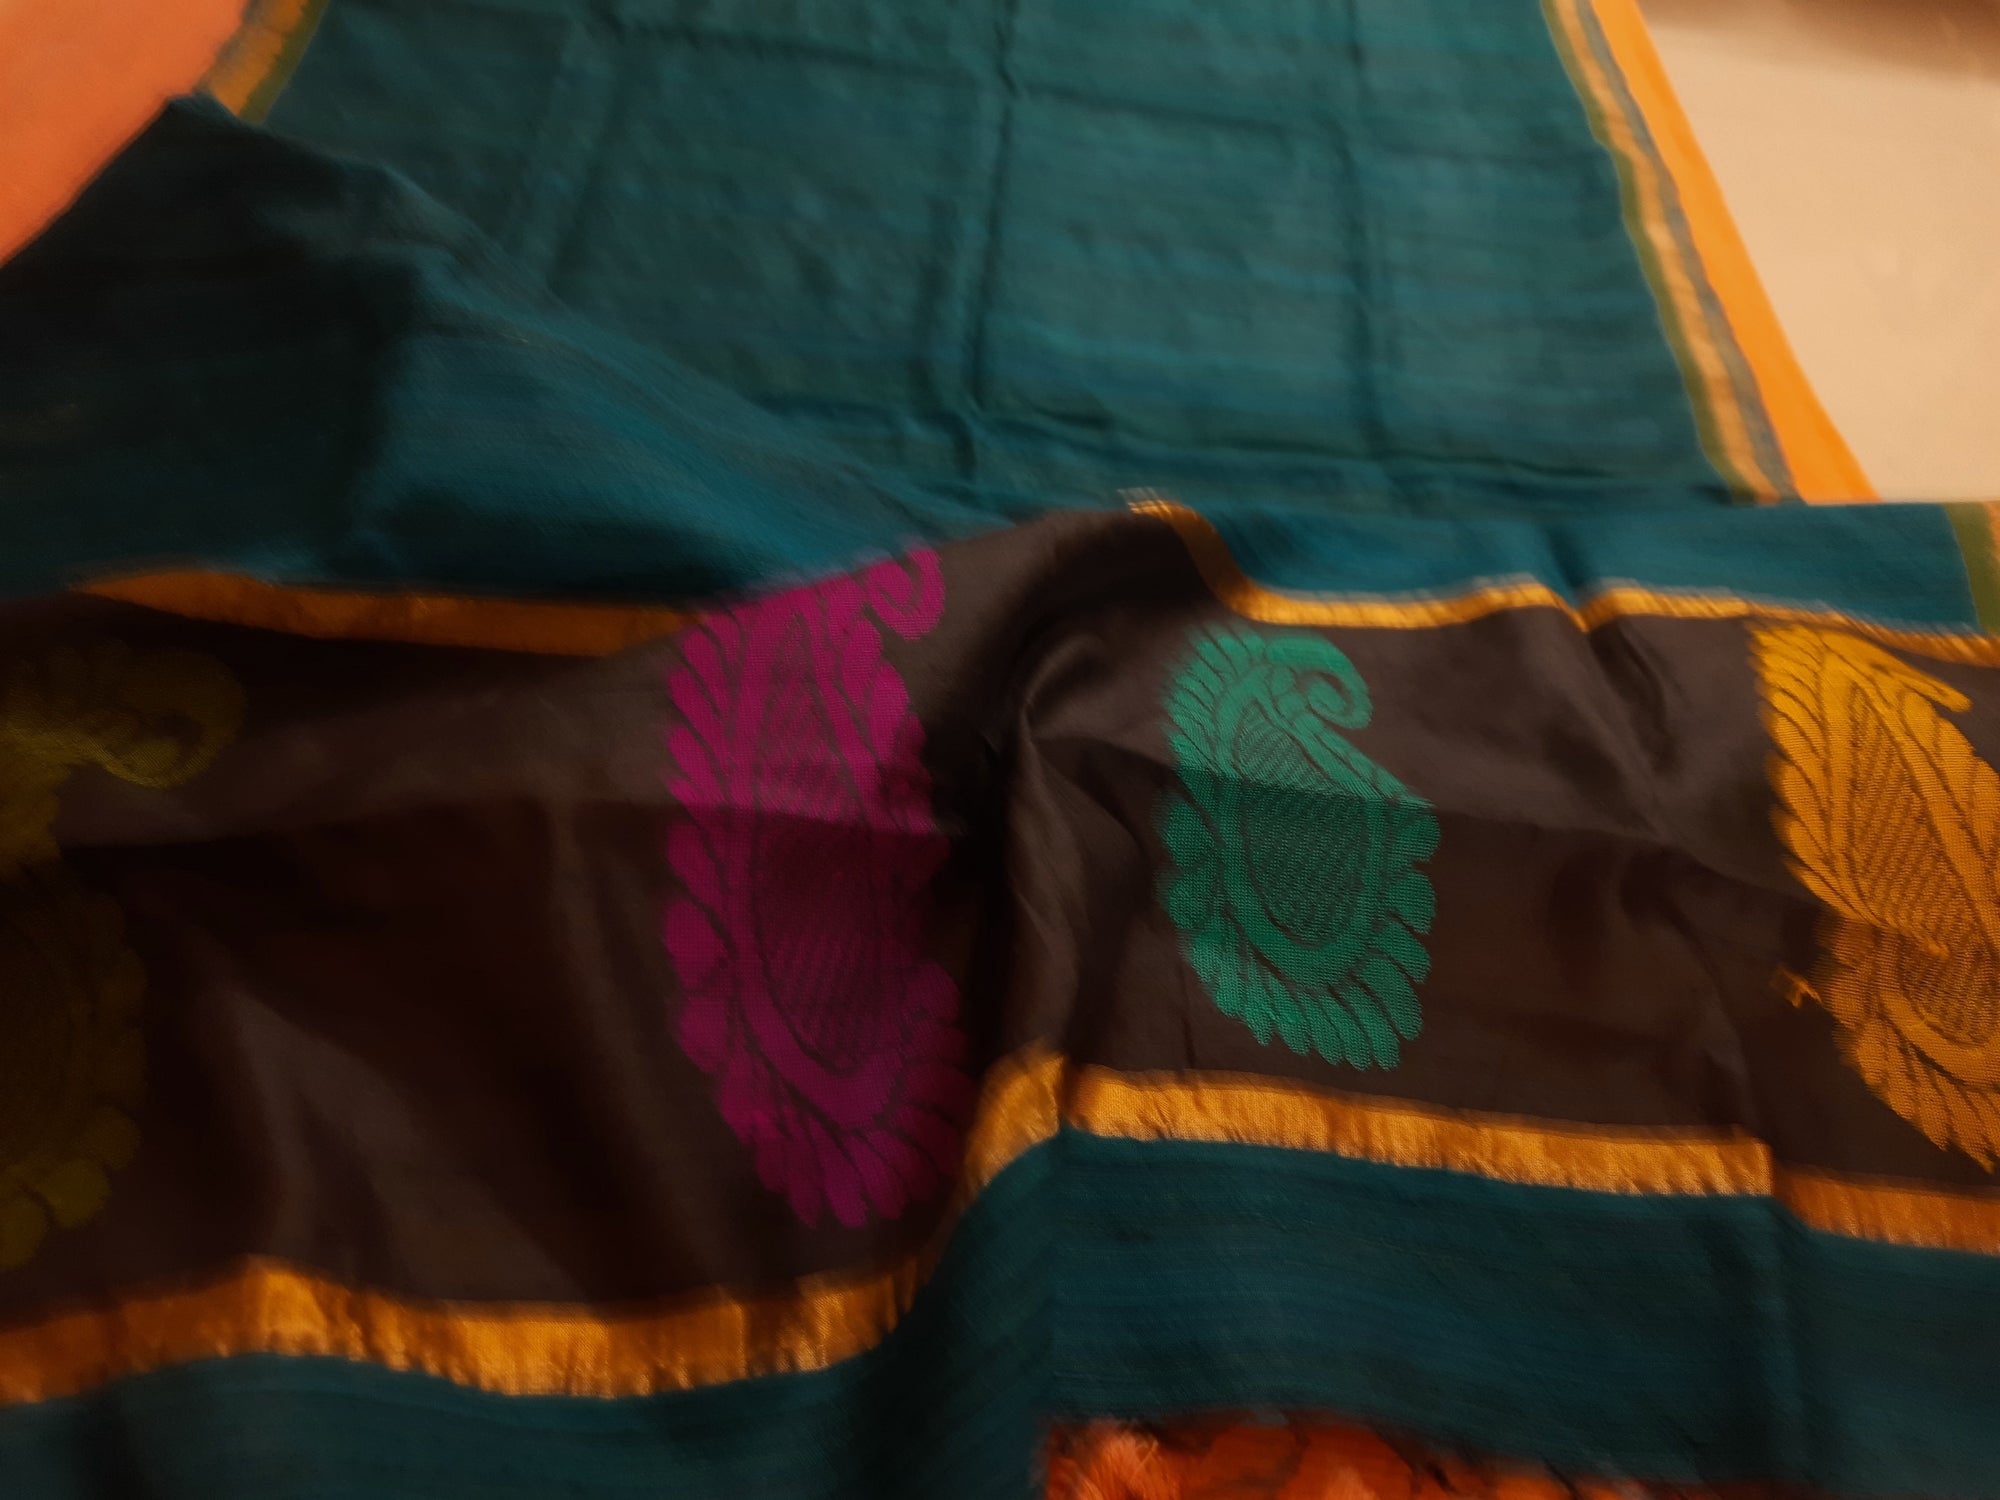 Green Tussar Ghicha Silk Dupatta with woven motifs